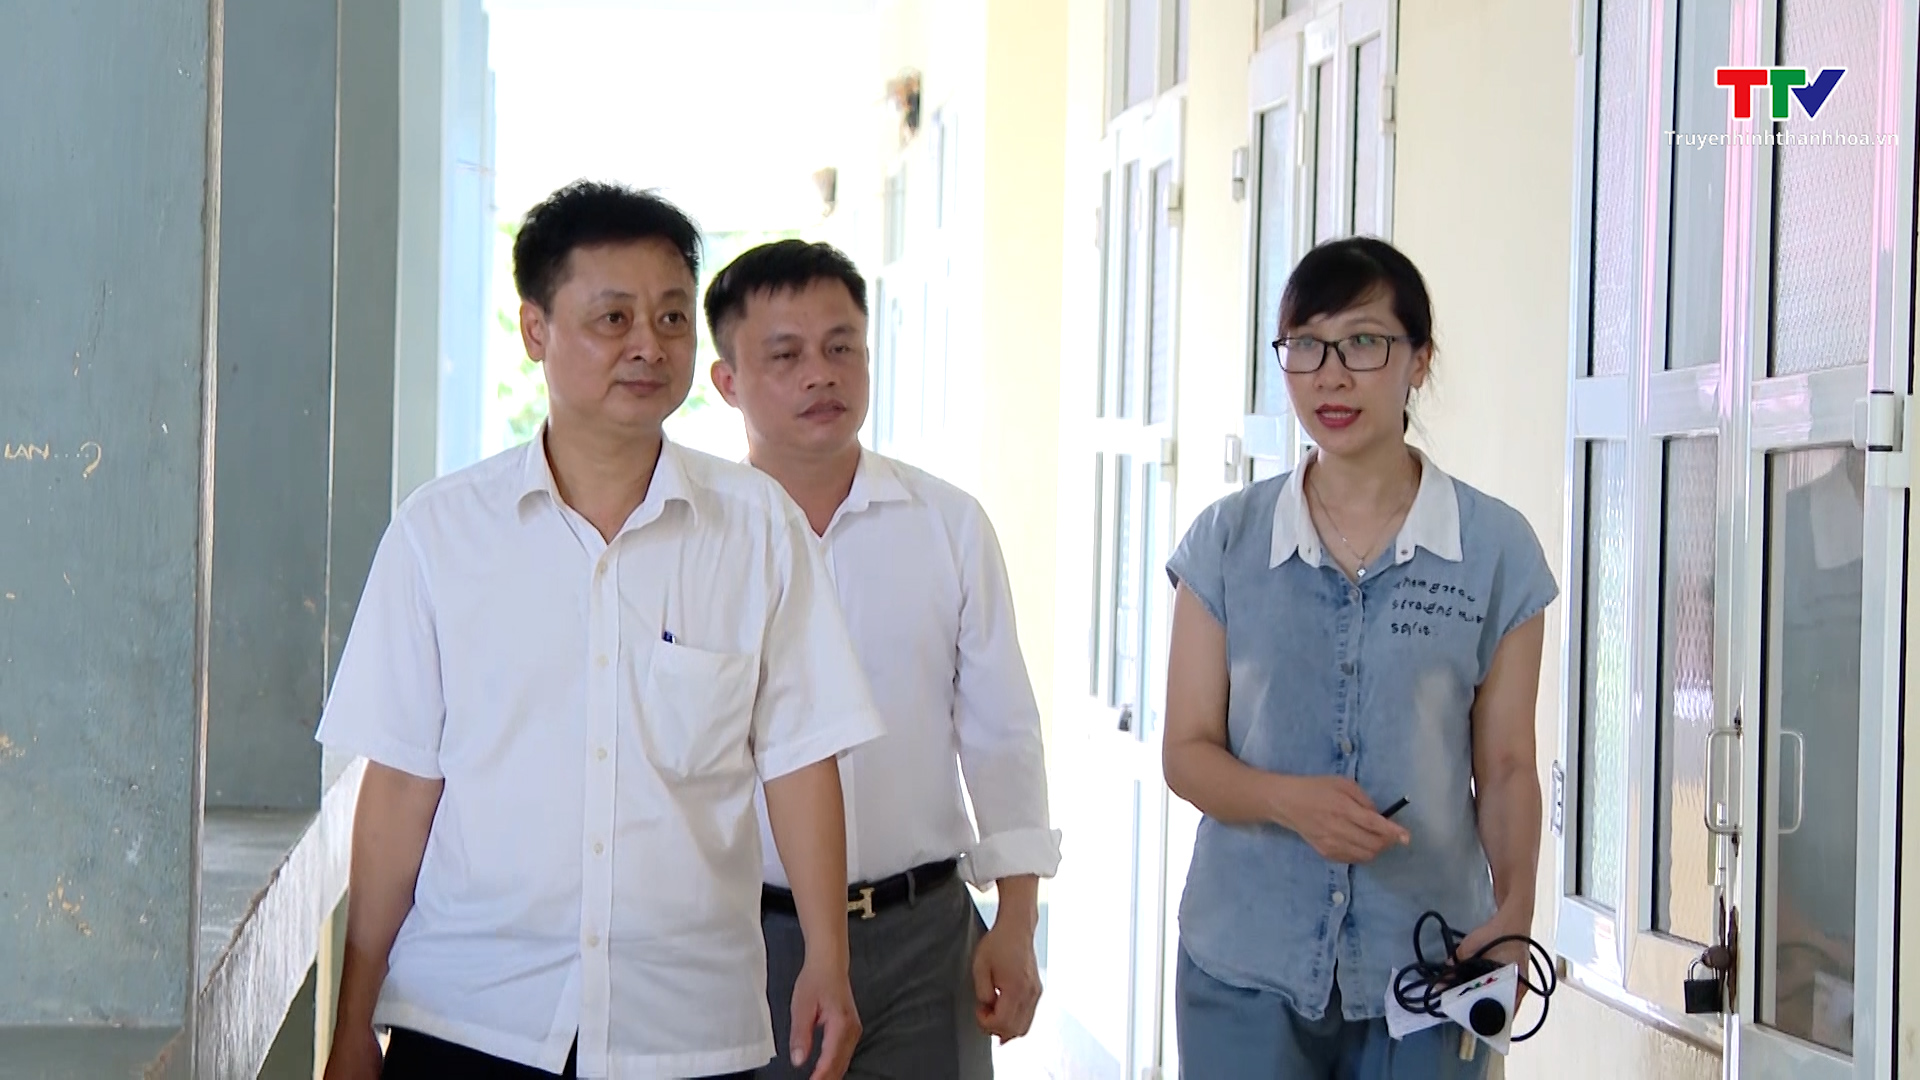 UBND huyện Mường Lát vào cuộc làm rõ phản ánh vi phạm tại trường Phổ thông dân tộc nội trú THCS Mường Lát- Ảnh 3.